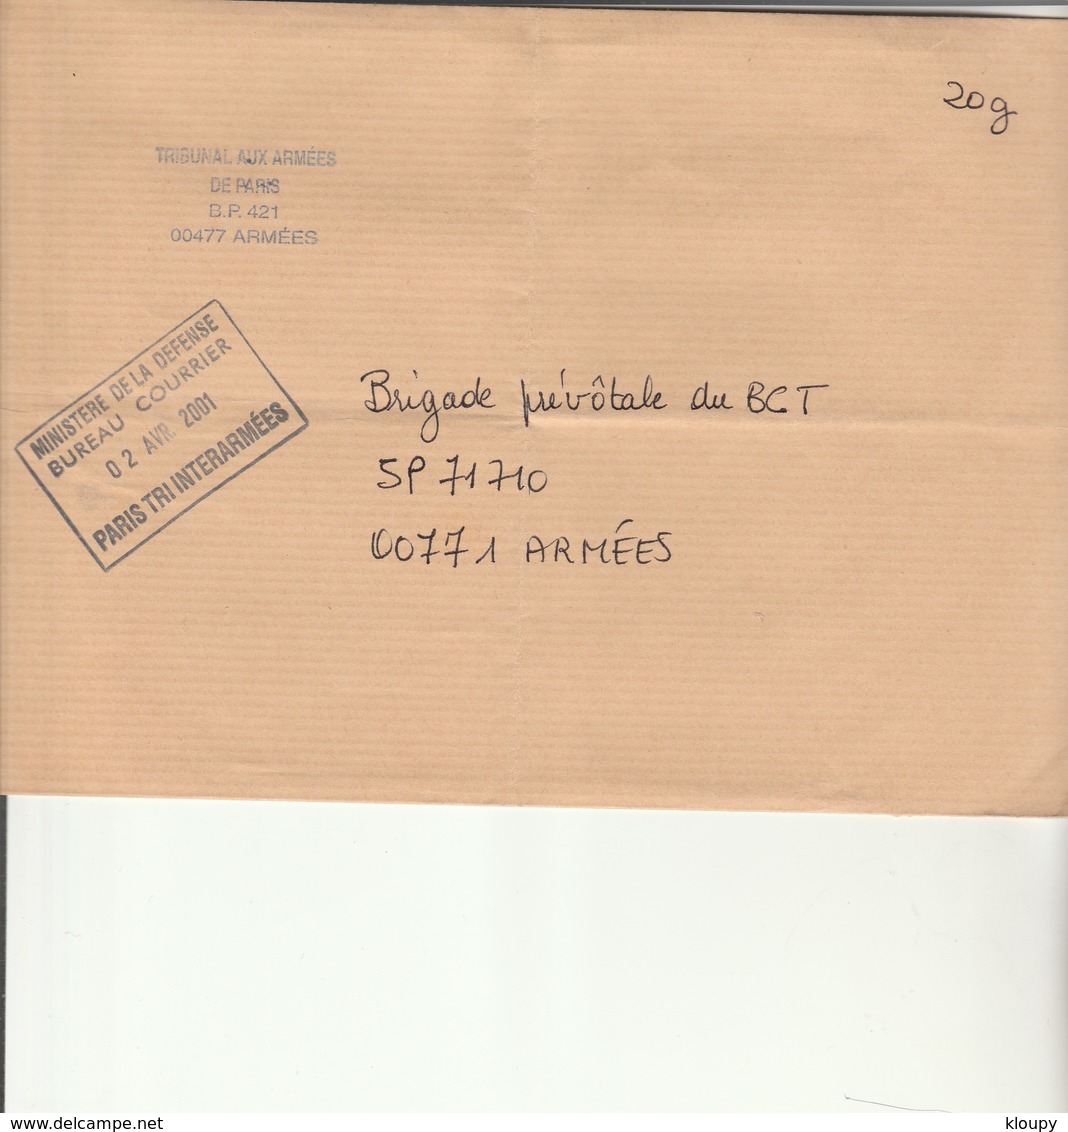 L 1 -  - Enveloppe Pour Gendarmerie Prévôtale SP 71710 Avec Cachet PARIS TRI INTERARMEES - Cachets Militaires A Partir De 1900 (hors Guerres)